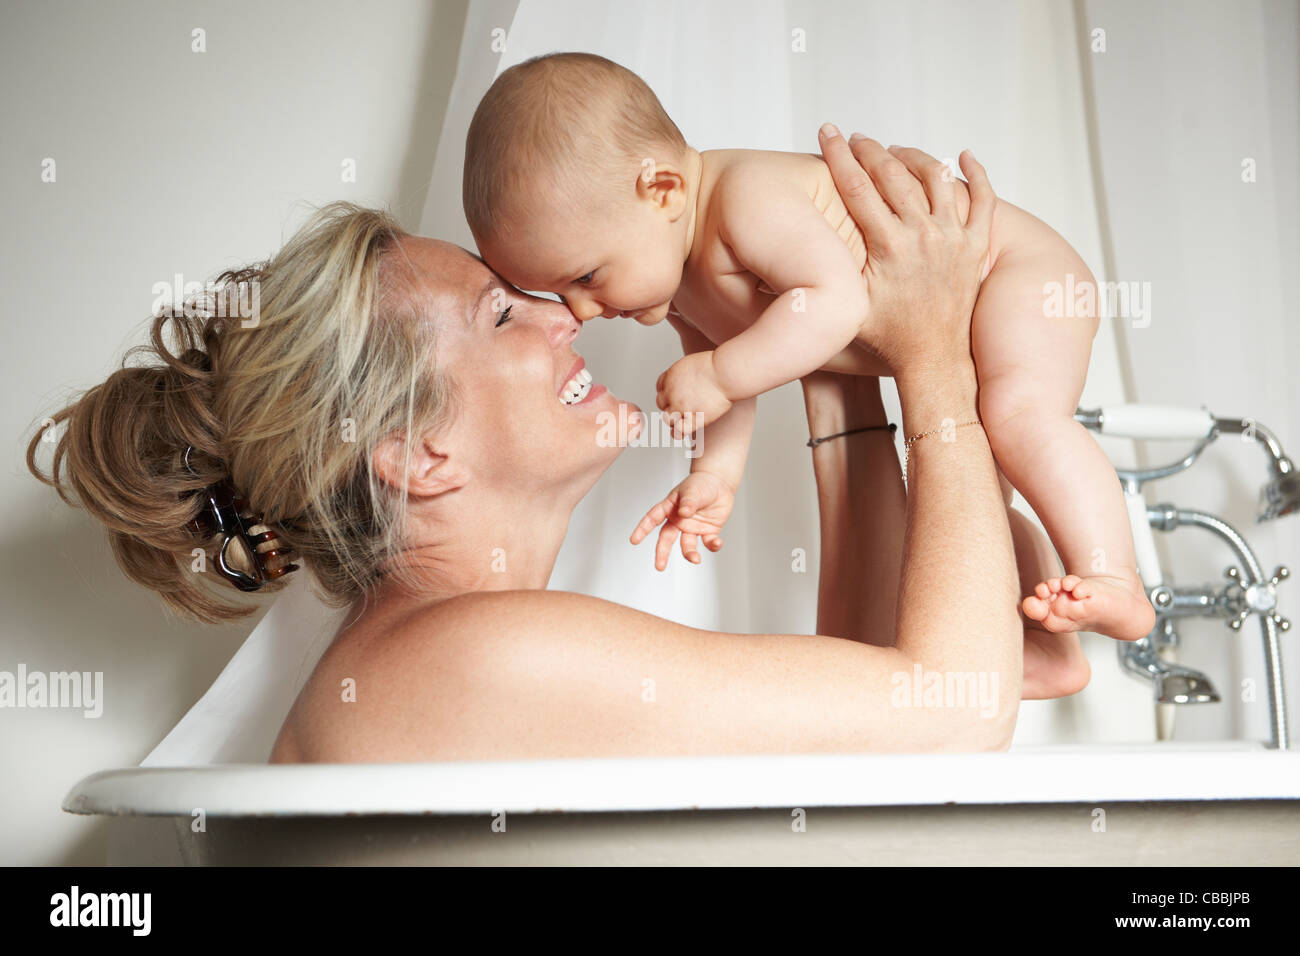 Madre sonriente de bañarse con el bebé Foto de stock